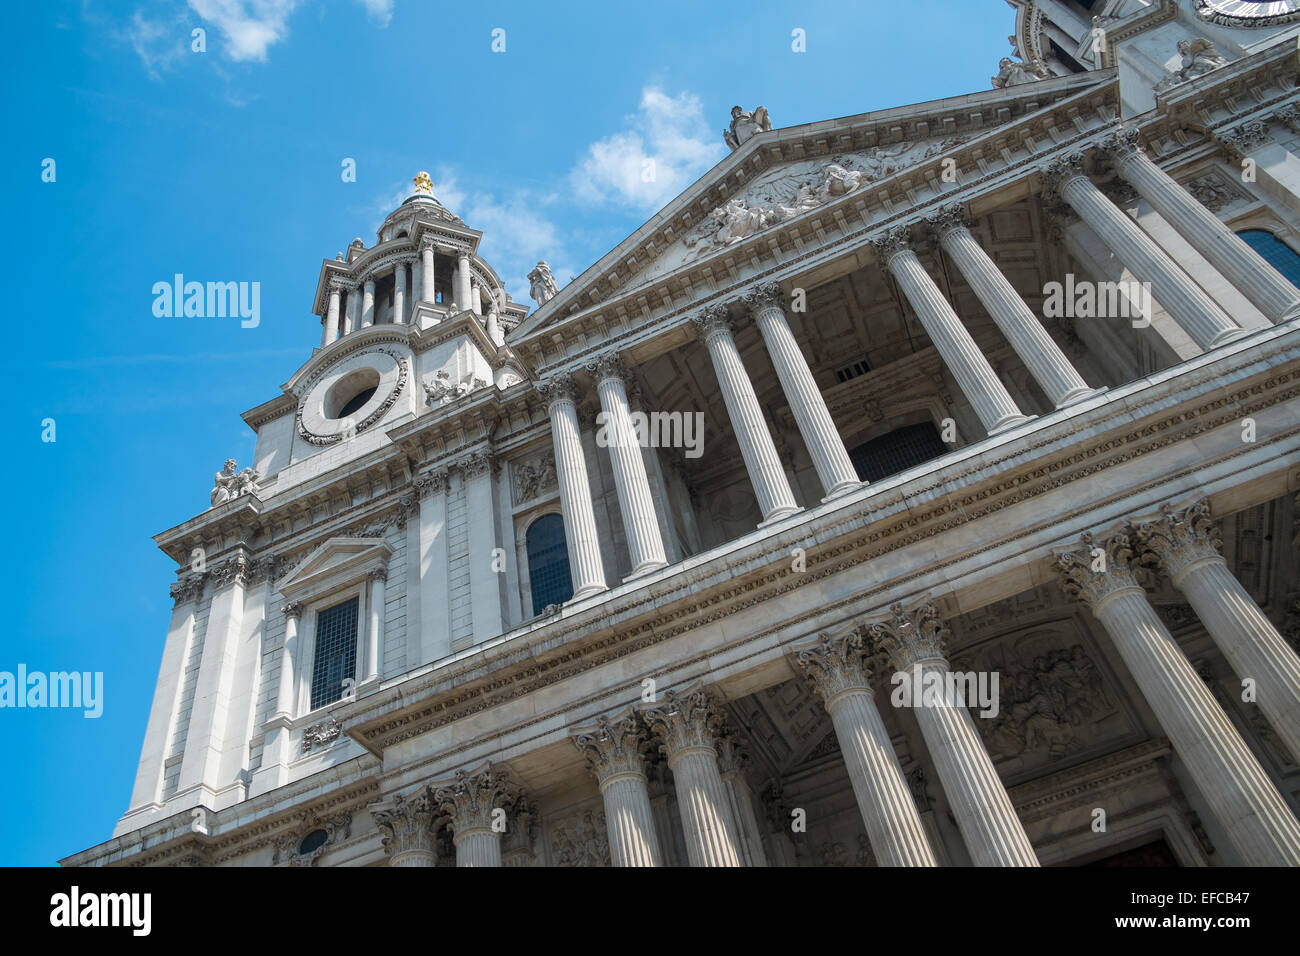 LONDON, UK - 3. Mai 2014: Vorderansicht der St Pauls Cathedral, einem beliebten touristischen Ort in London im Mai 2014 Stockfoto